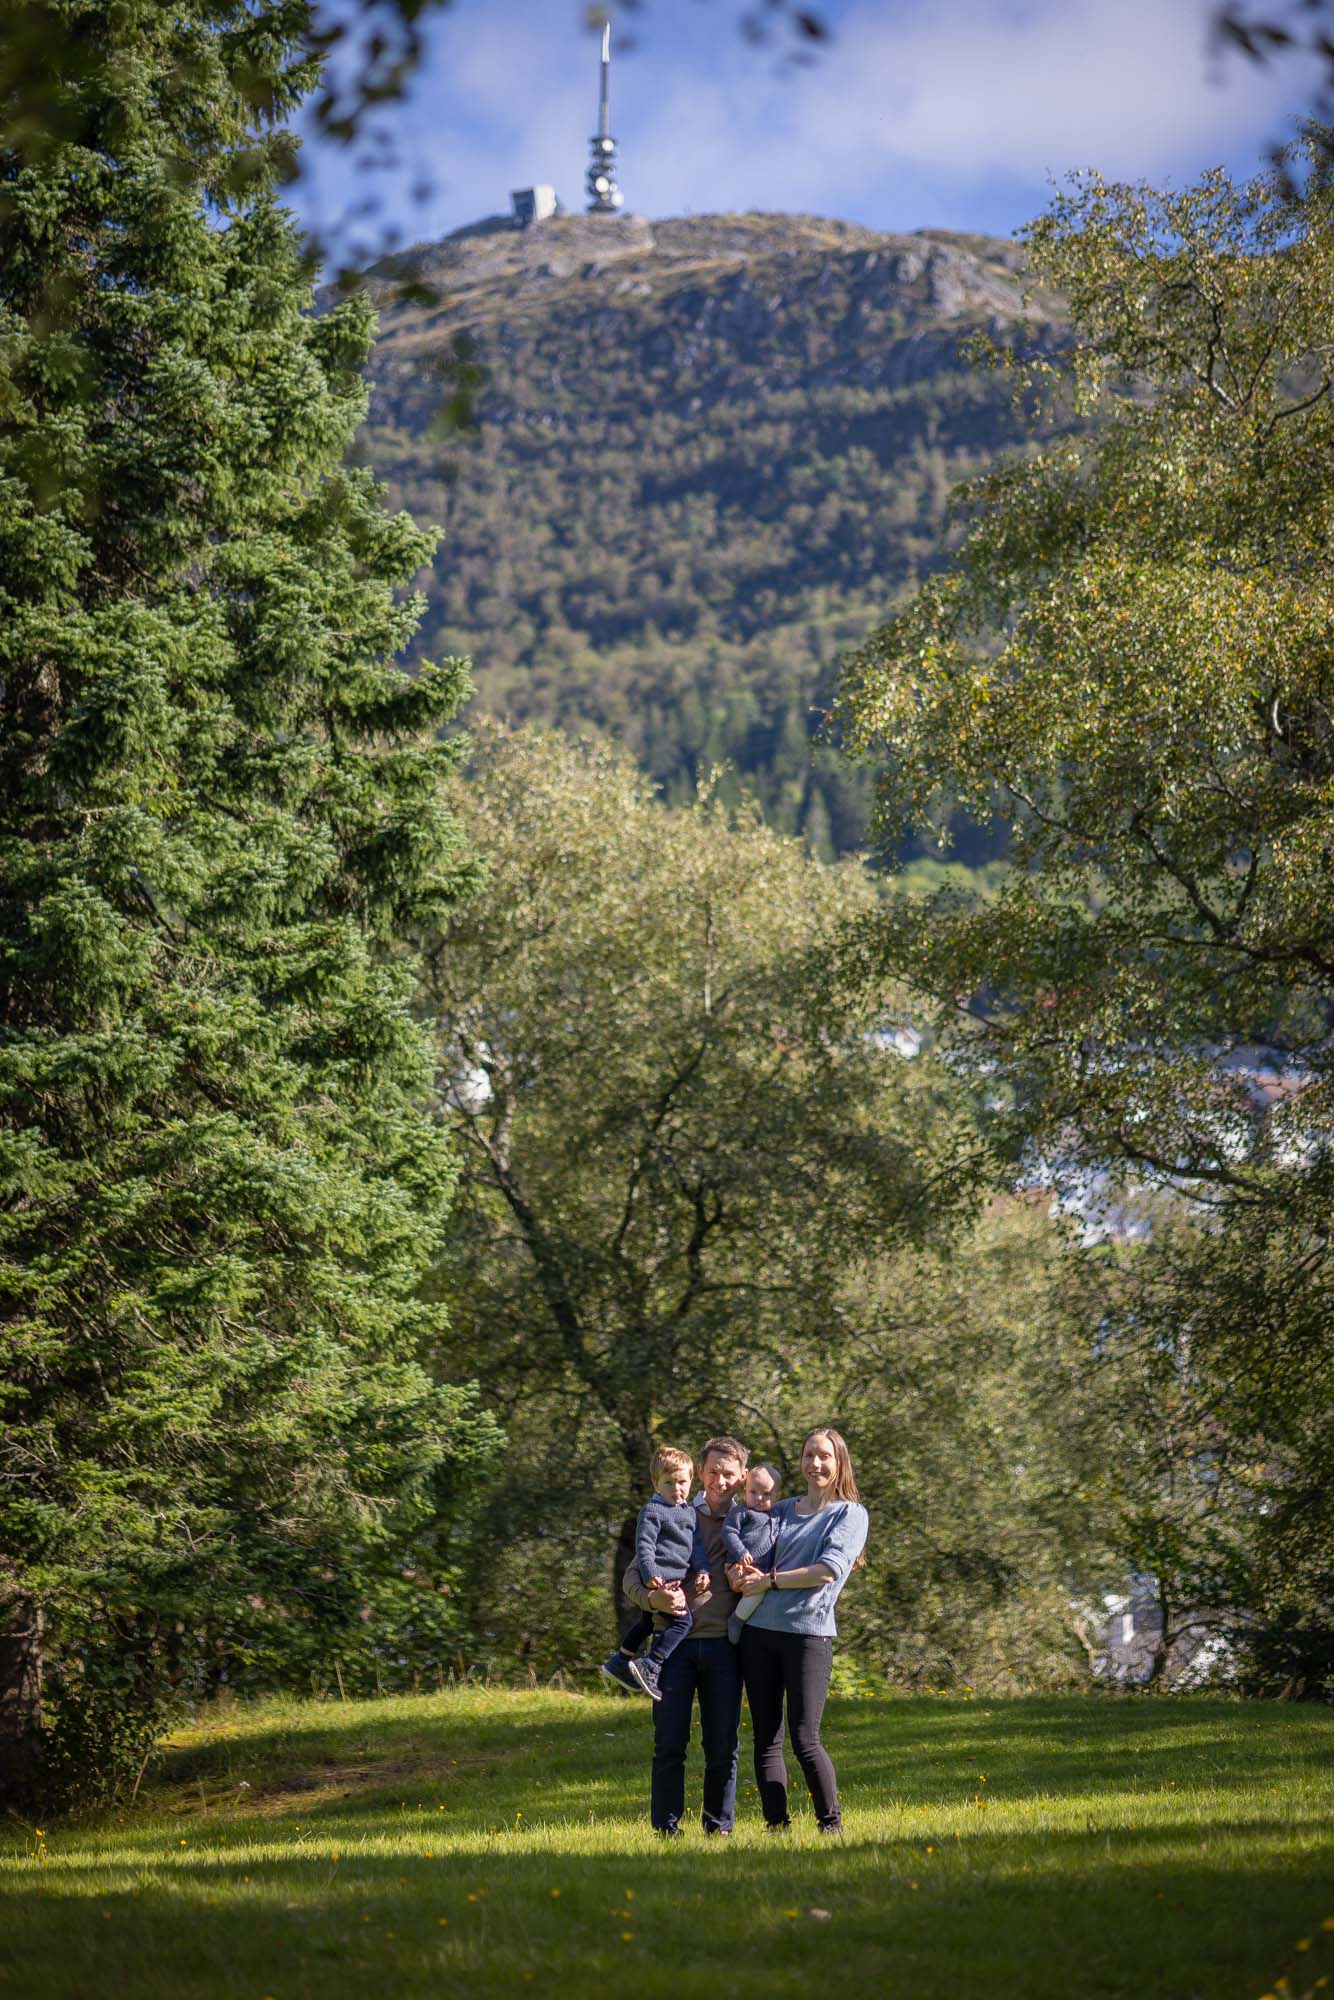 Familie på fire; to voksne og to små barn, fotografert i Langhaugparken i Bergen. Ulriken fjellet i bakgrunnen, familien står på en grønn plen med høye grønne trær rundt dem.